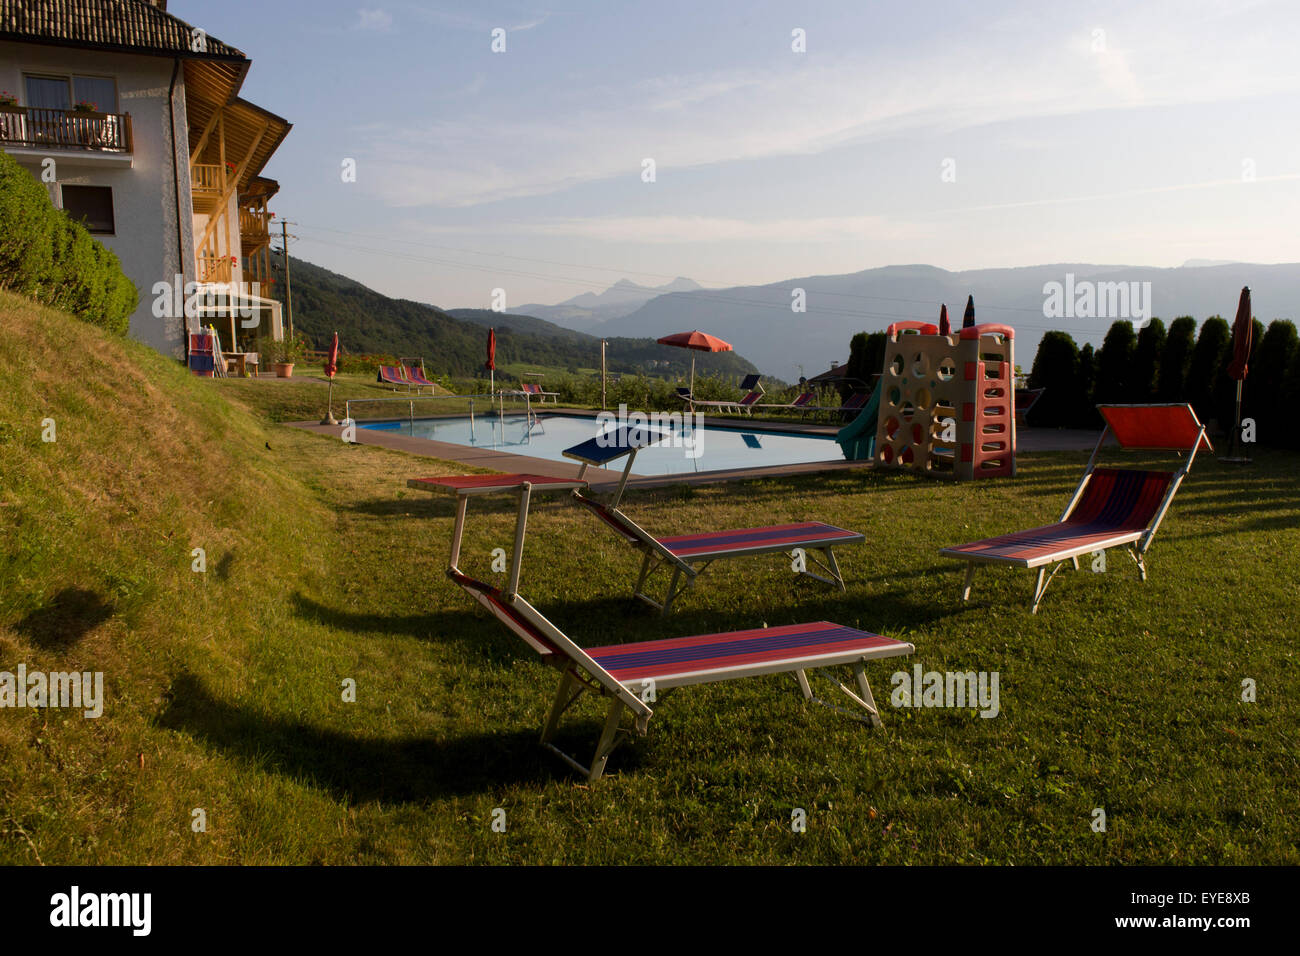 La mattina presto a bordo piscina lettini per prendere il sole in un country hotel nelle Dolomiti, rurale Alto Adige, a sud-ovest di Bolzano, Itally. Foto Stock